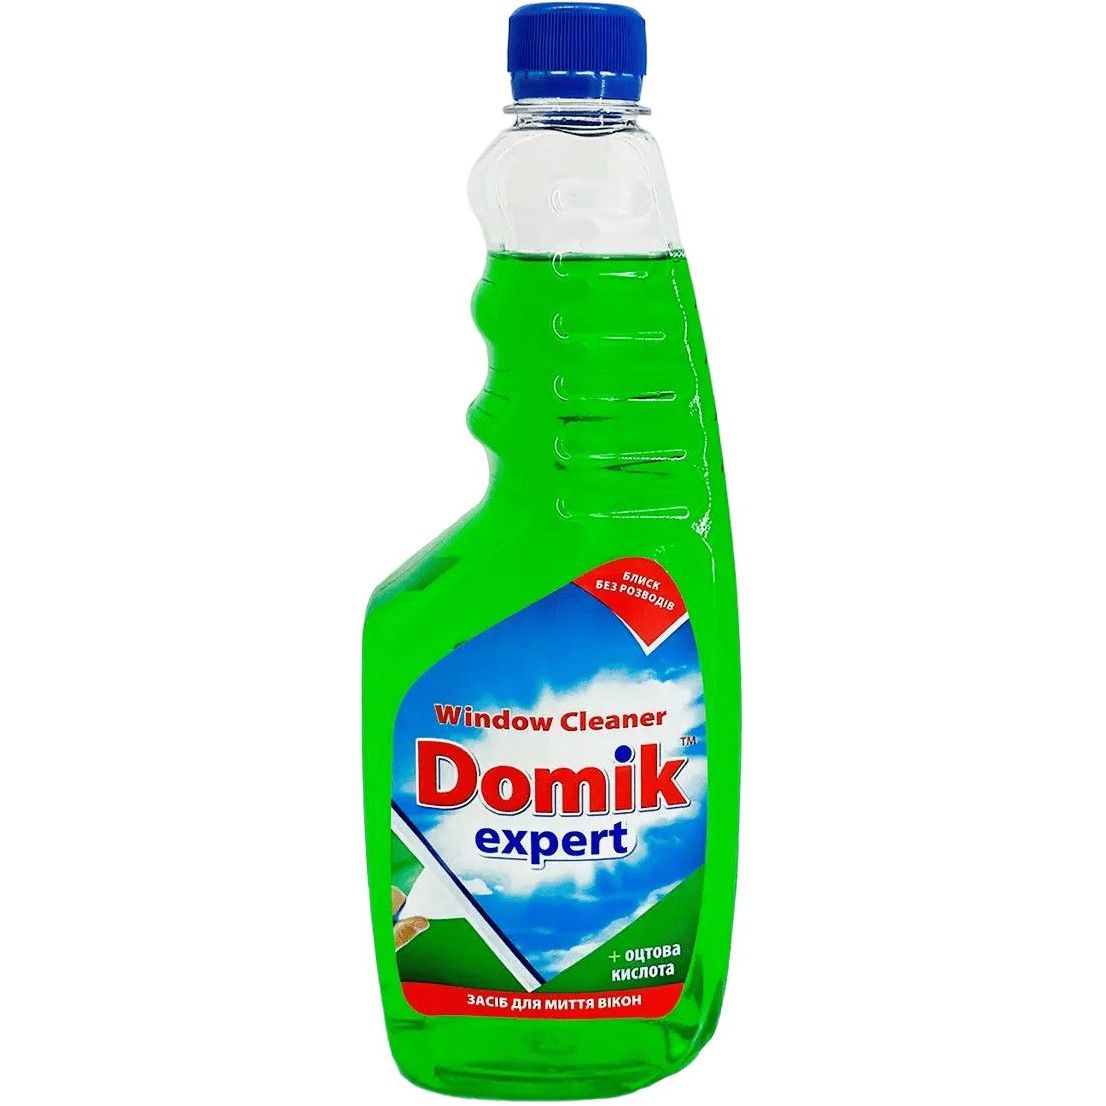 Засіб для миття вікон Domik expert з оцтовою кислотою, запаска, 750 мл - фото 1